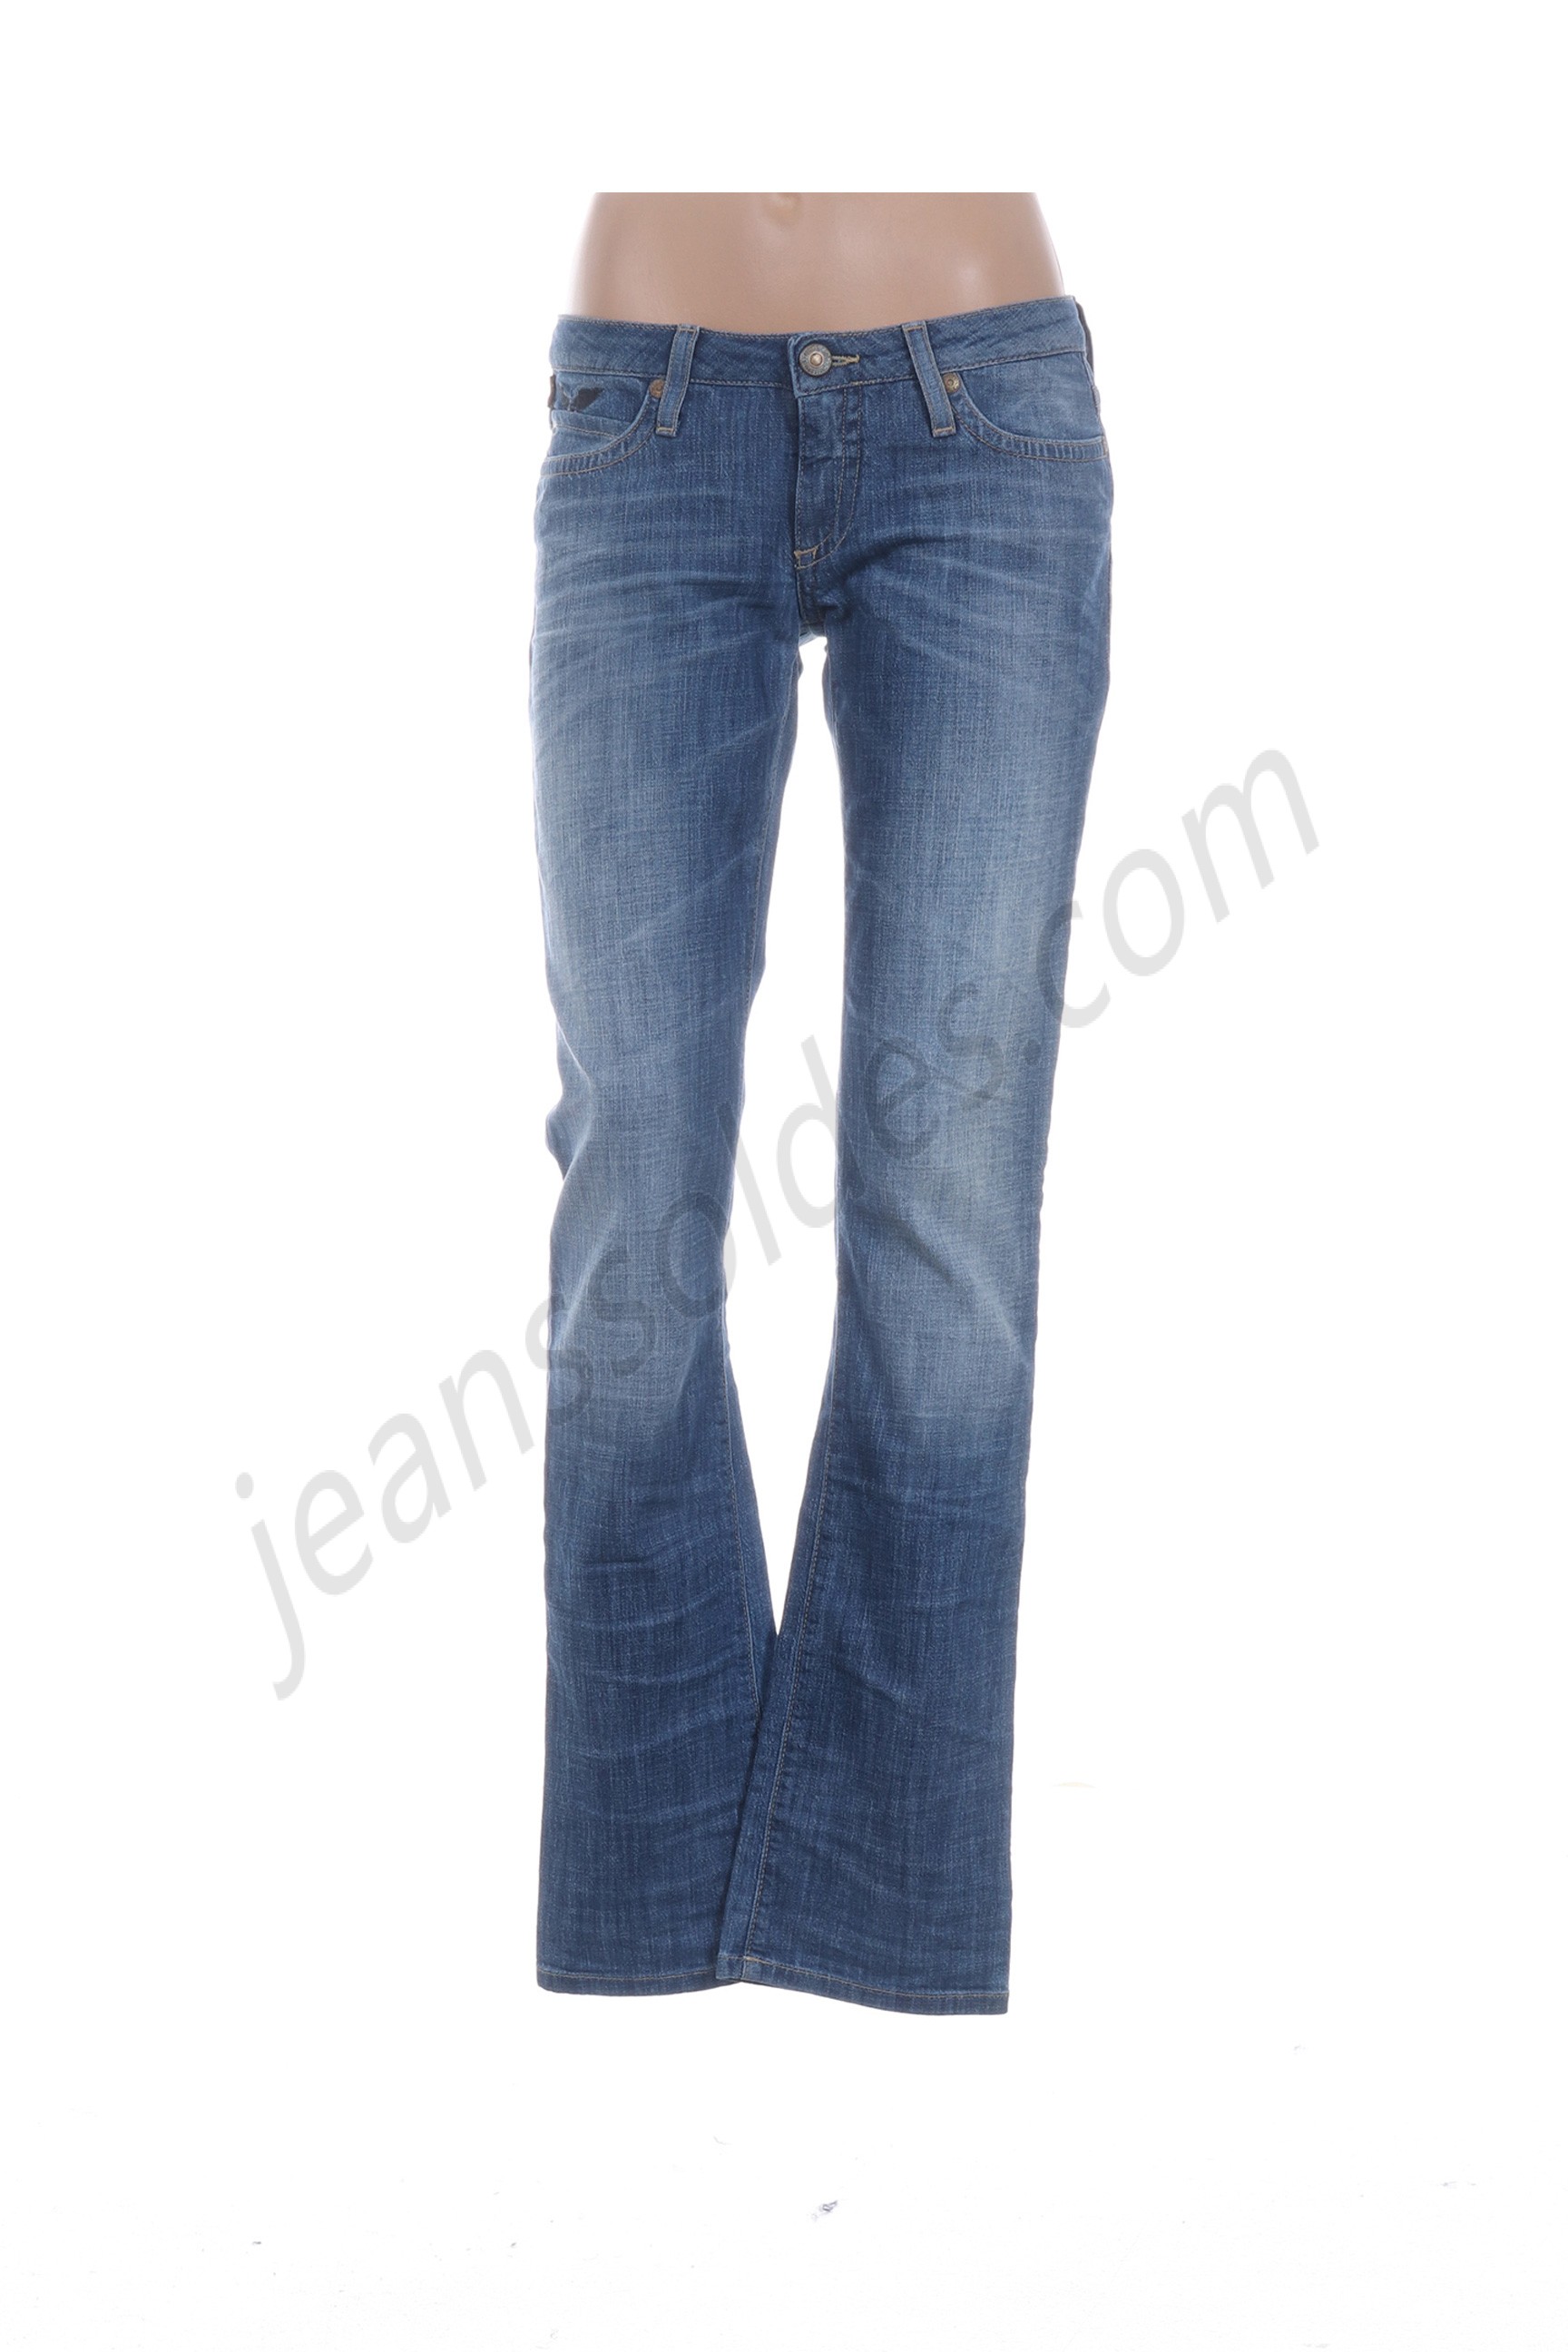 robin's jean-Jeans coupe droite prix d’amis - robin's jean-Jeans coupe droite prix d’amis